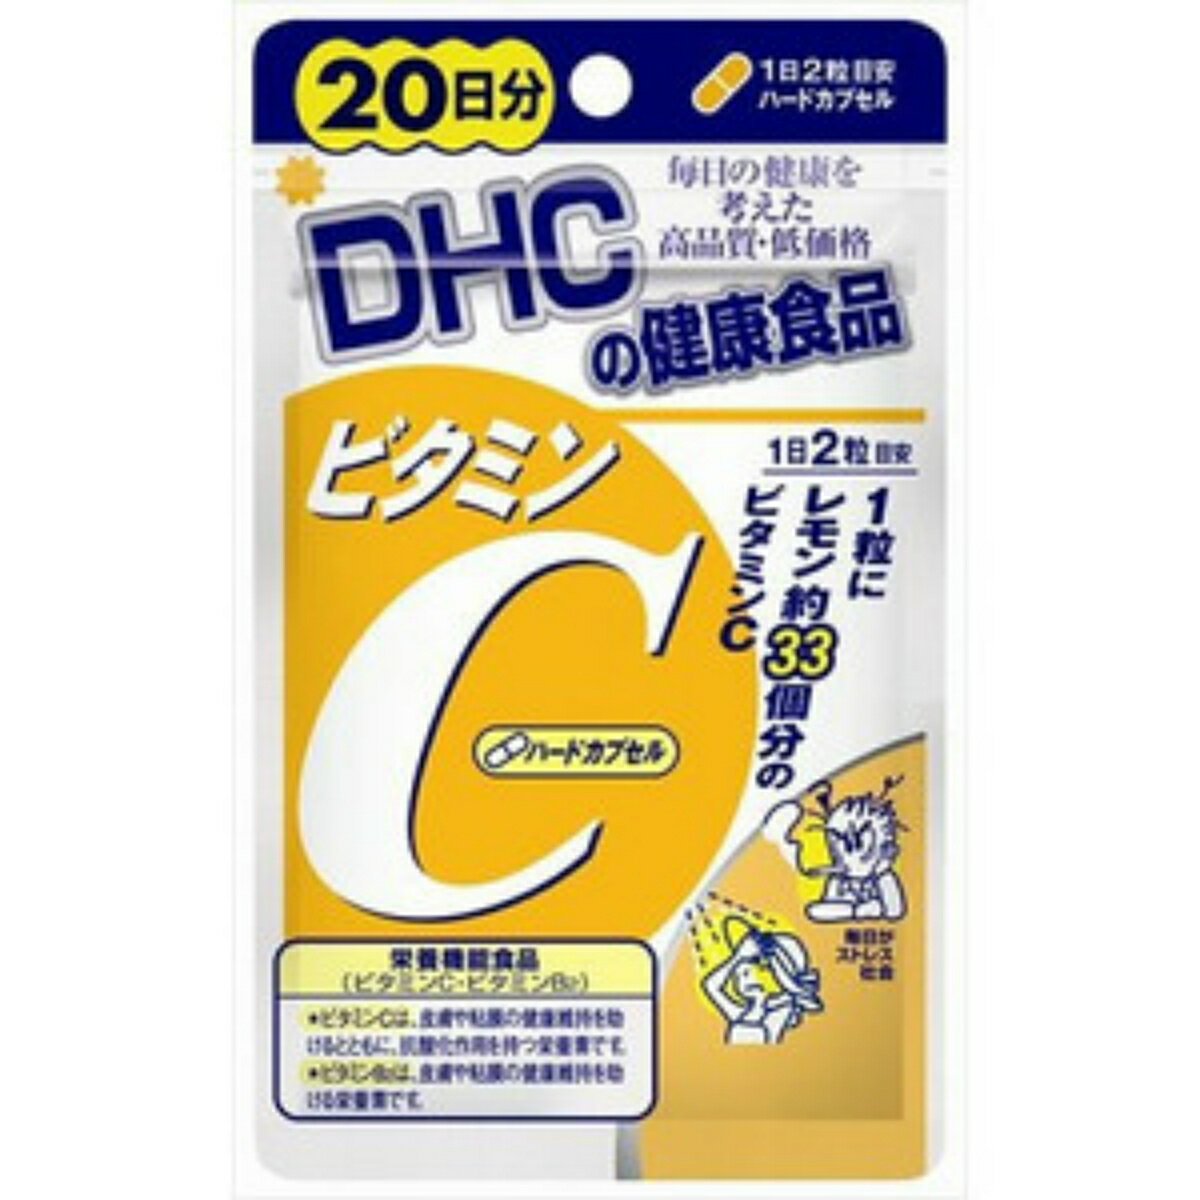 商品名：DHC ビタミンC 20日分 40粒入 ハードカプセルサプリメント内容量：40粒入JANコード：4511413404058発売元、製造元、輸入元又は販売元：DHC原産国：日本区分：栄養機能食品商品番号：101-r002-4511413404058ブランド：DHCビタミンCにその働きを助けるビタミンB2をプラスしたサプリメントです。　朝と夜など、2回に分けてとるのがおすすめです。広告文責：アットライフ株式会社TEL 050-3196-1510 ※商品パッケージは変更の場合あり。メーカー欠品または完売の際、キャンセルをお願いすることがあります。ご了承ください。